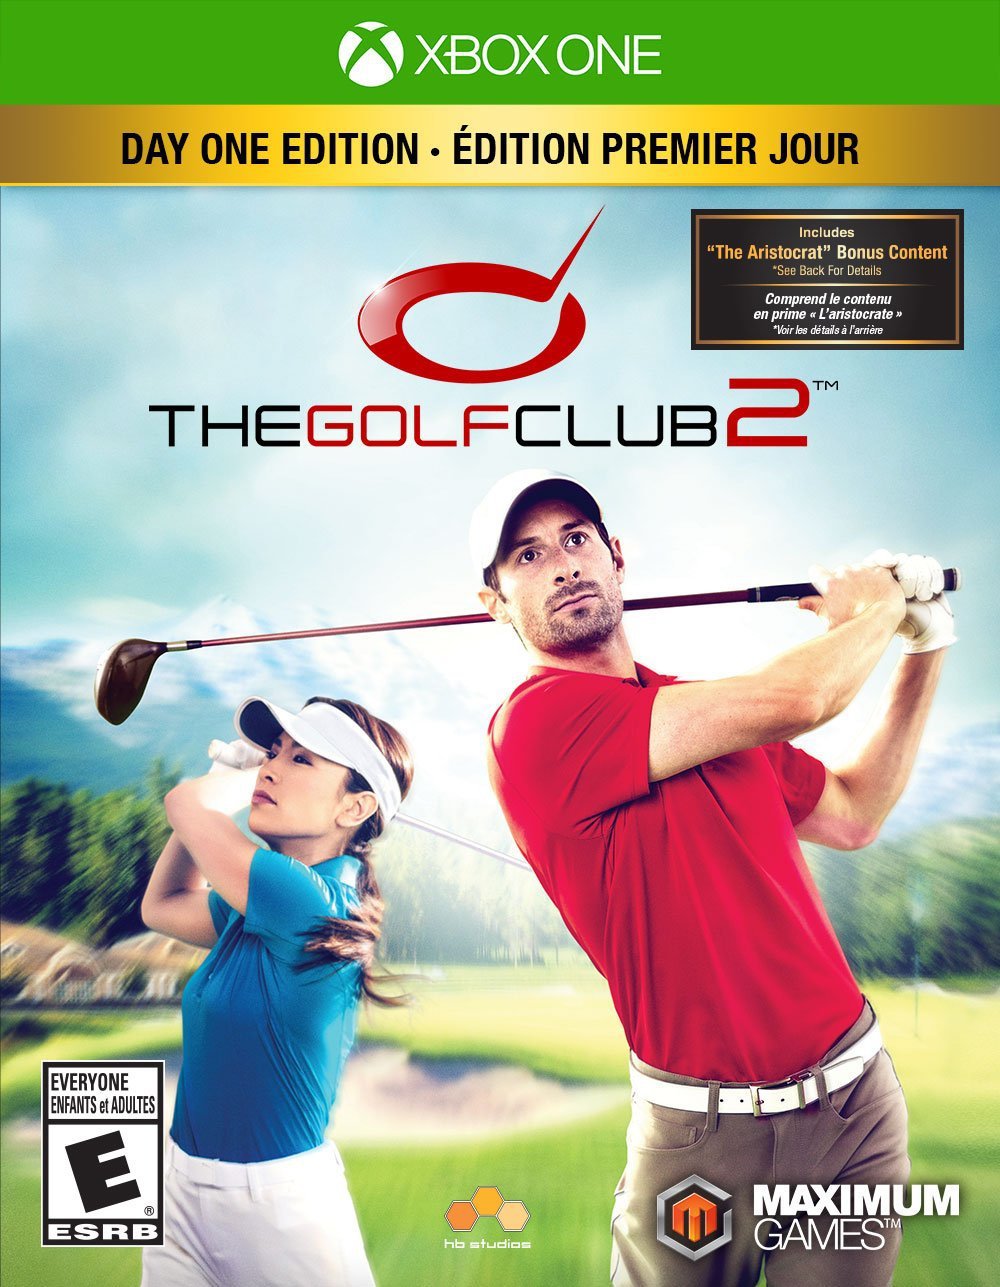 Golf Club 2, The